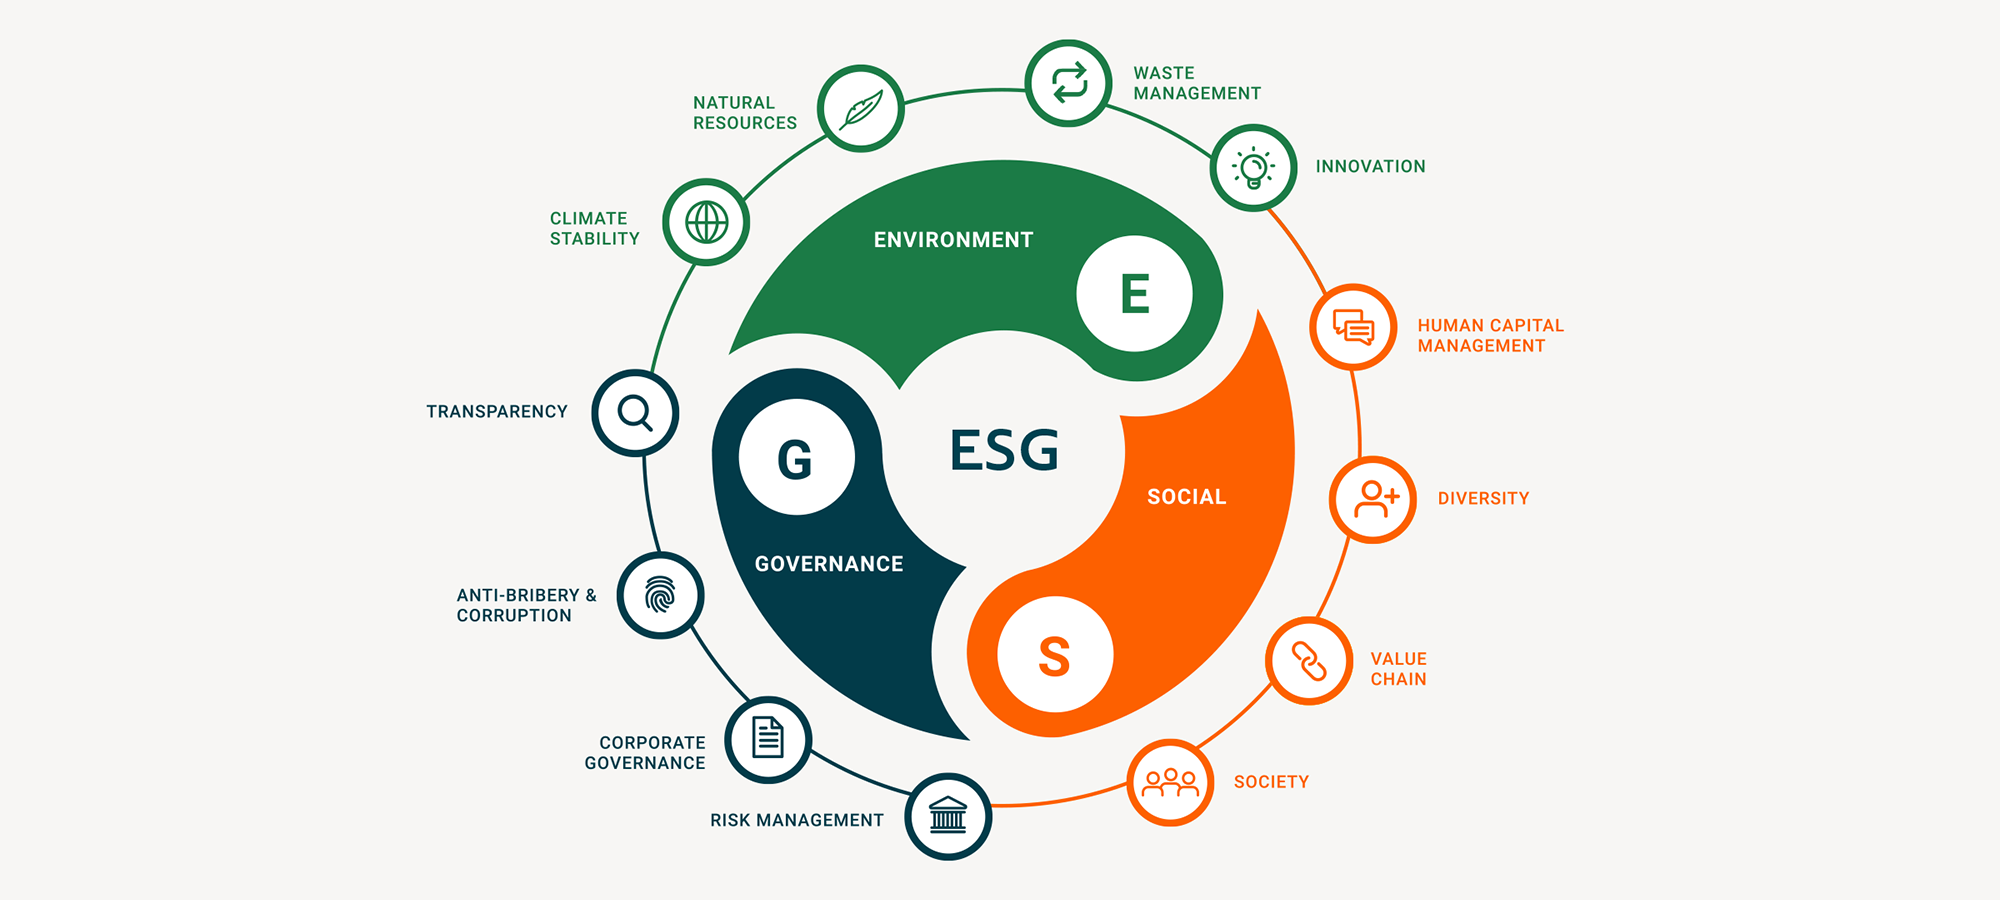 【未来工作】ESG-首席人力资源官必须关注的点